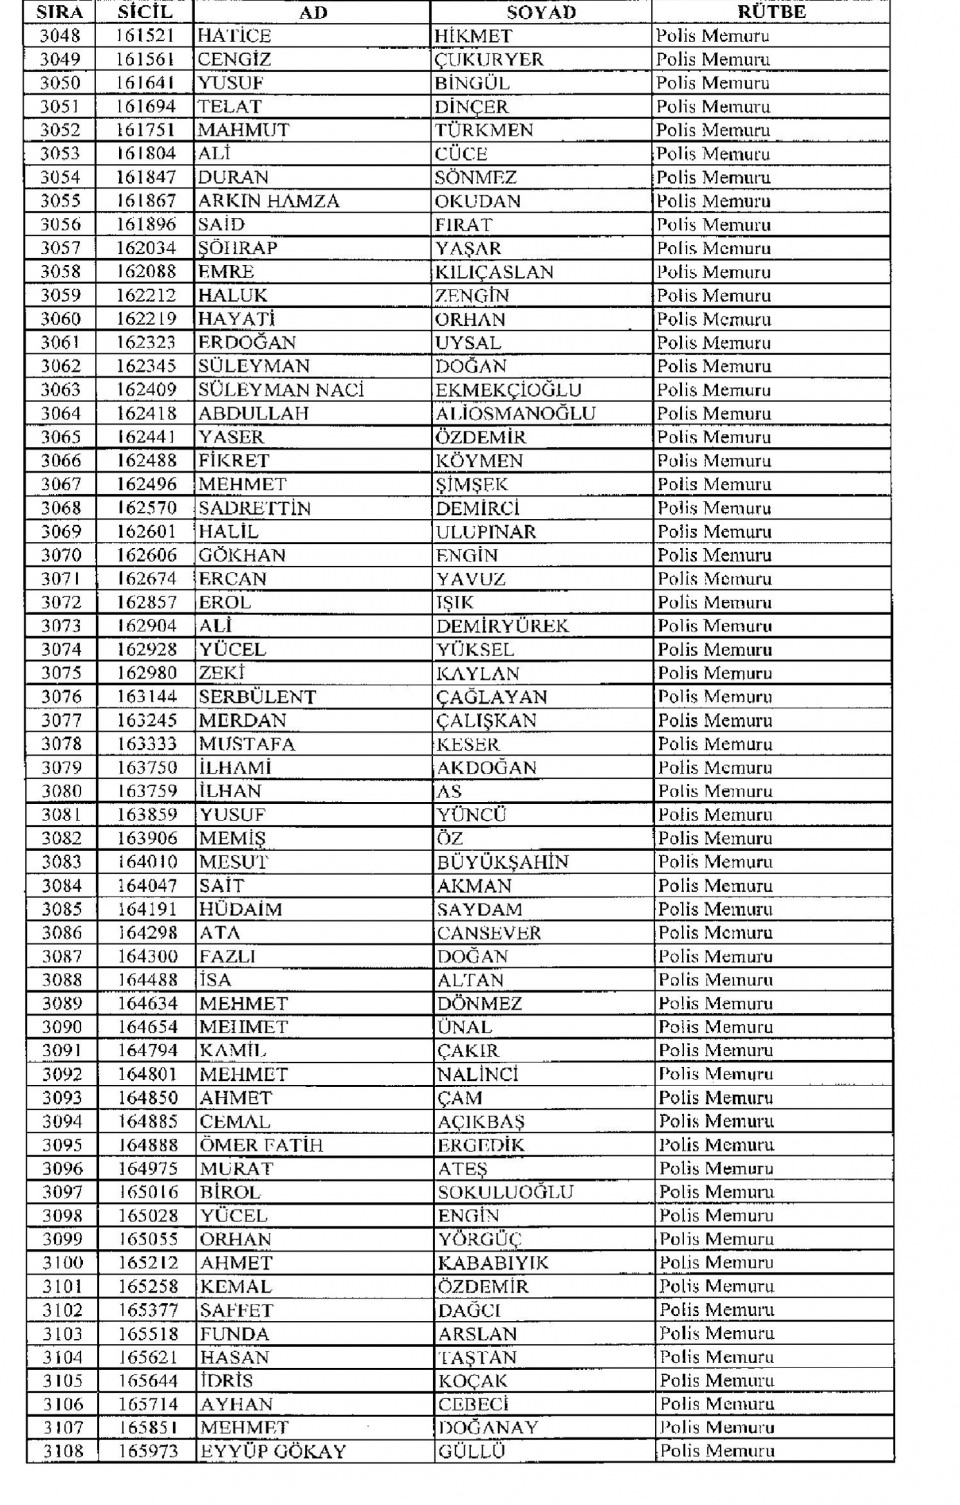 Kamudan ihraç edilenlerin isimleri 109